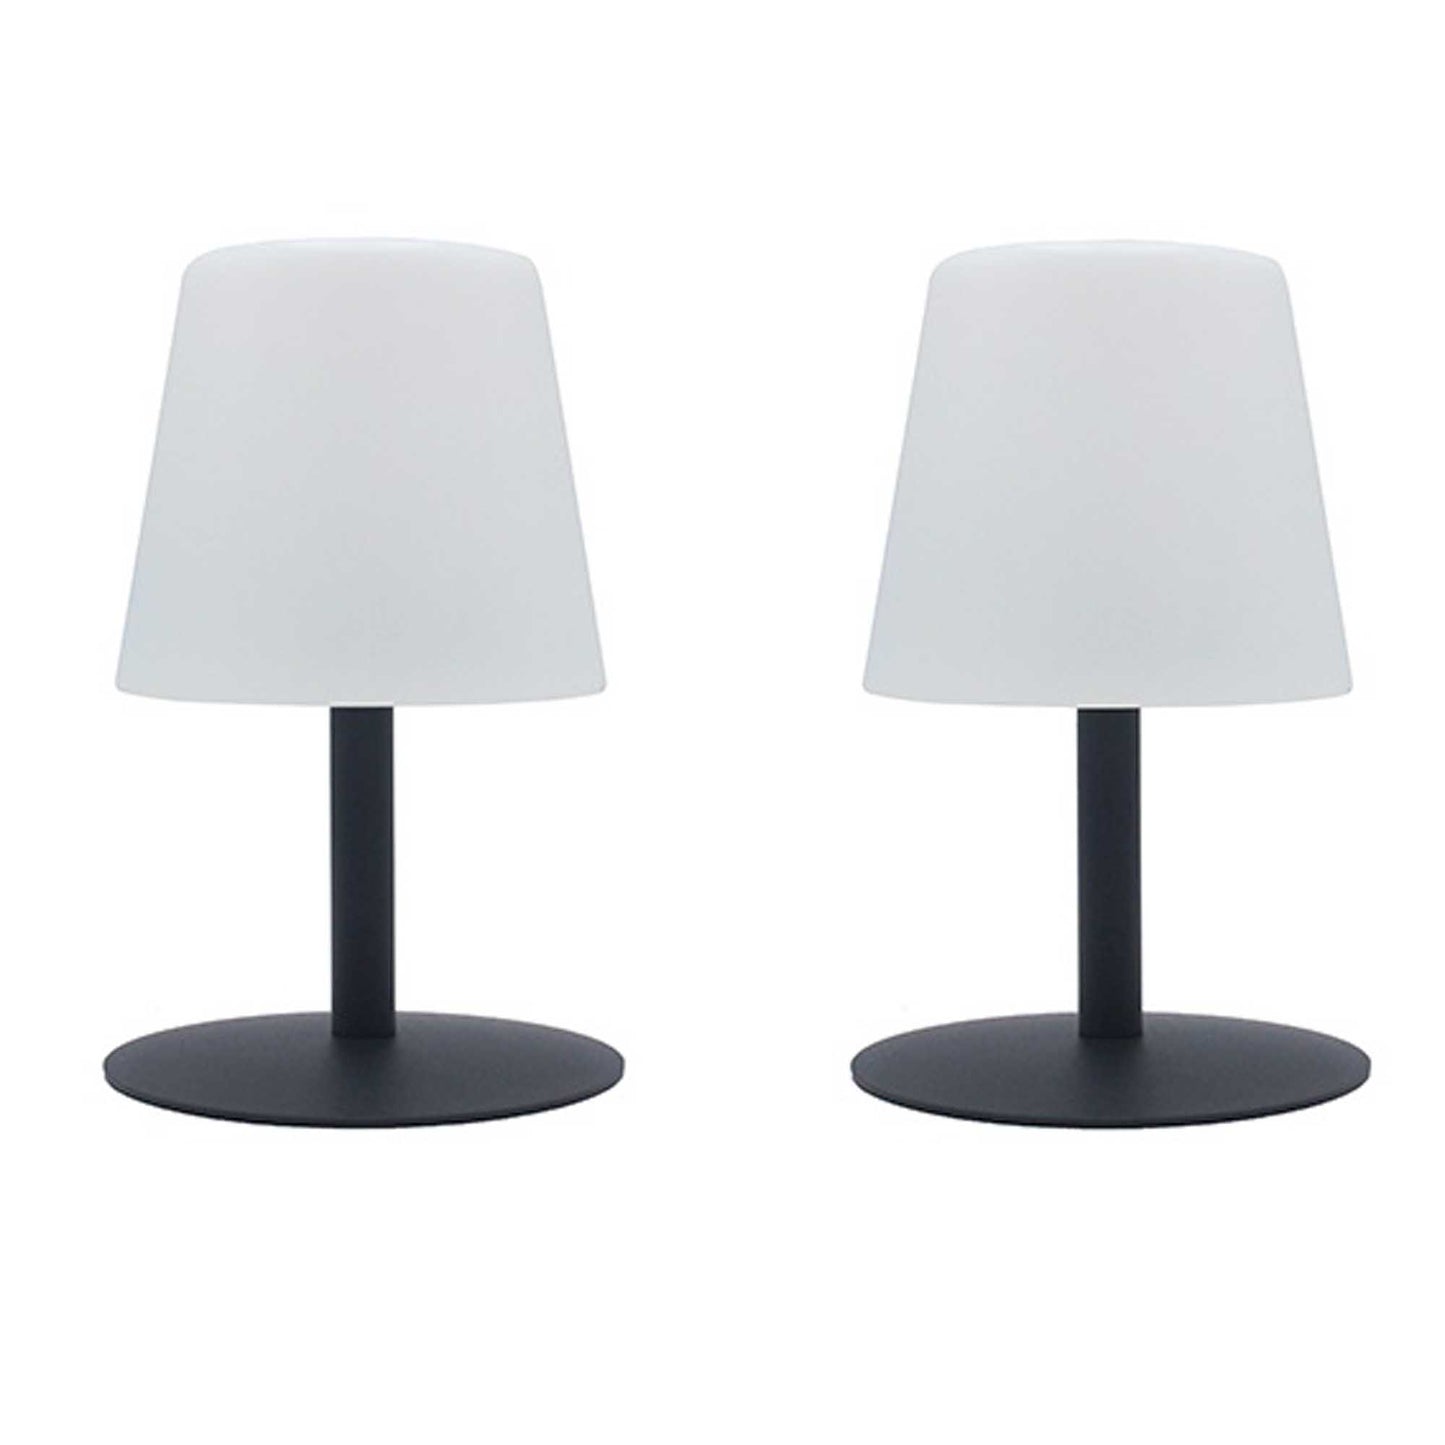 Lot de 2 Lampe de table sans fil pied en acier gris LED blanc chaud/blanc dimmable STANDY MINI Rock H25cm